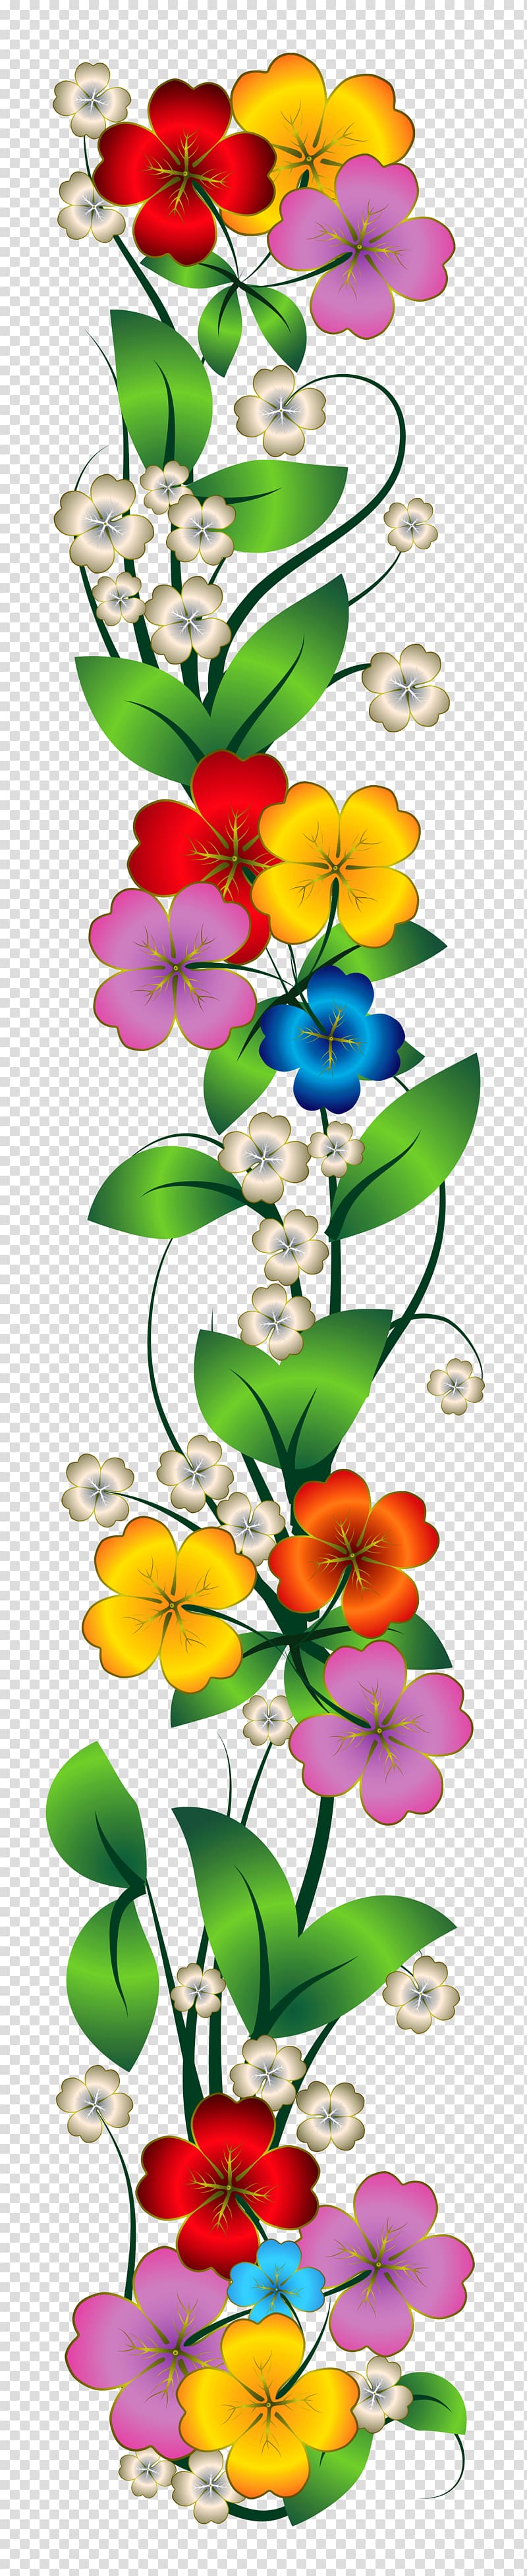 Flower bouquet , Dussehra transparent background PNG clipart